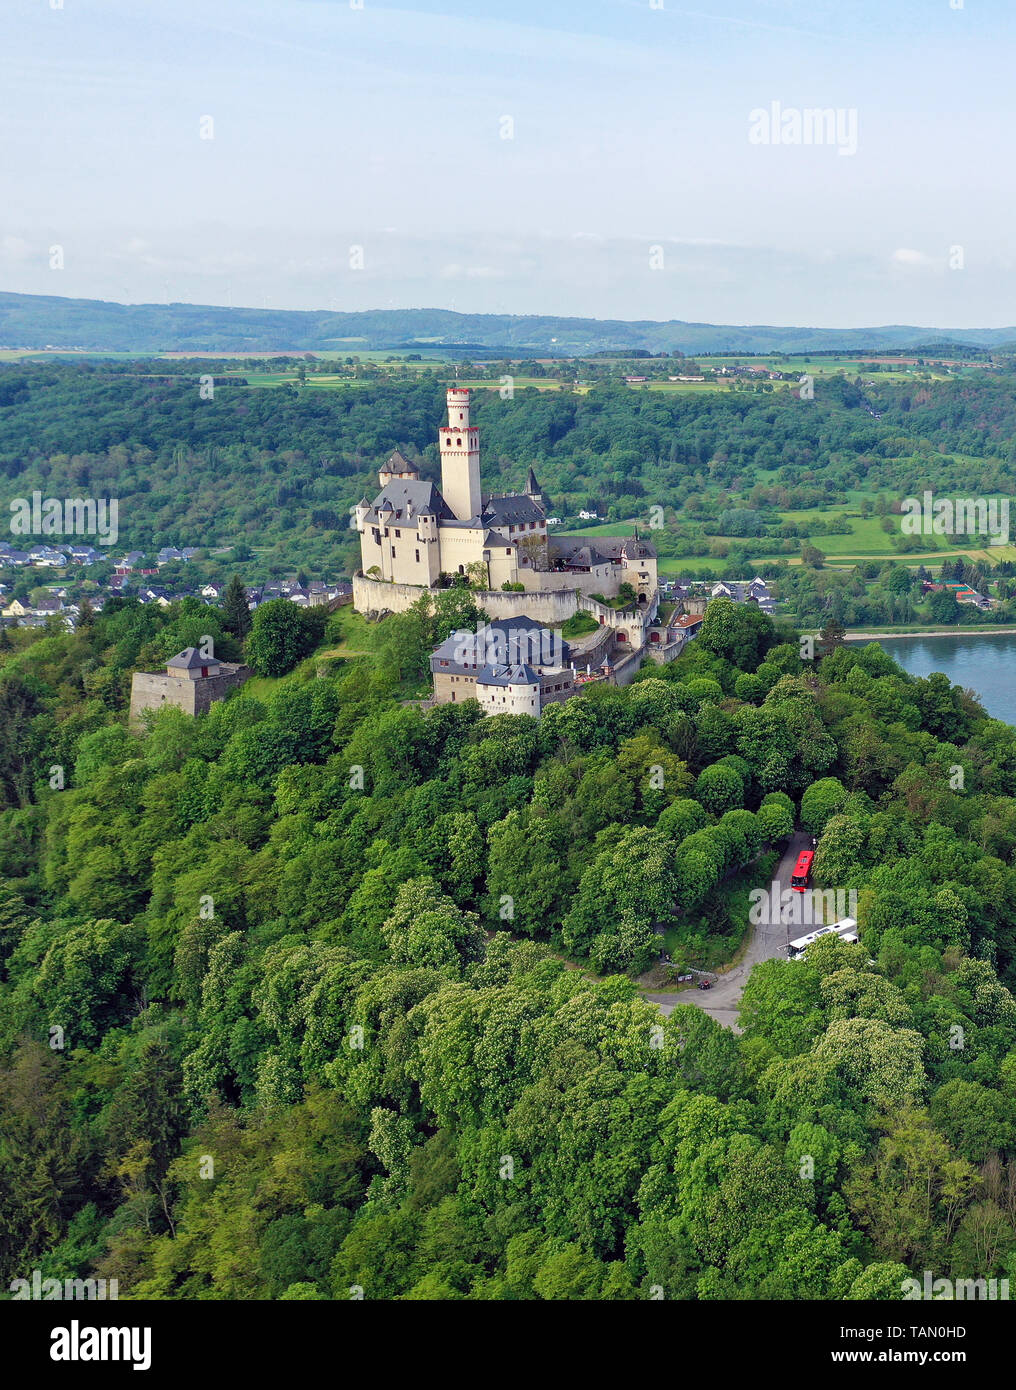 Au village de Marksburg Braubach, site du patrimoine mondial de l'UNESCO, Vallée du Haut-Rhin moyen, Rhénanie-Palatinat, Allemagne Banque D'Images